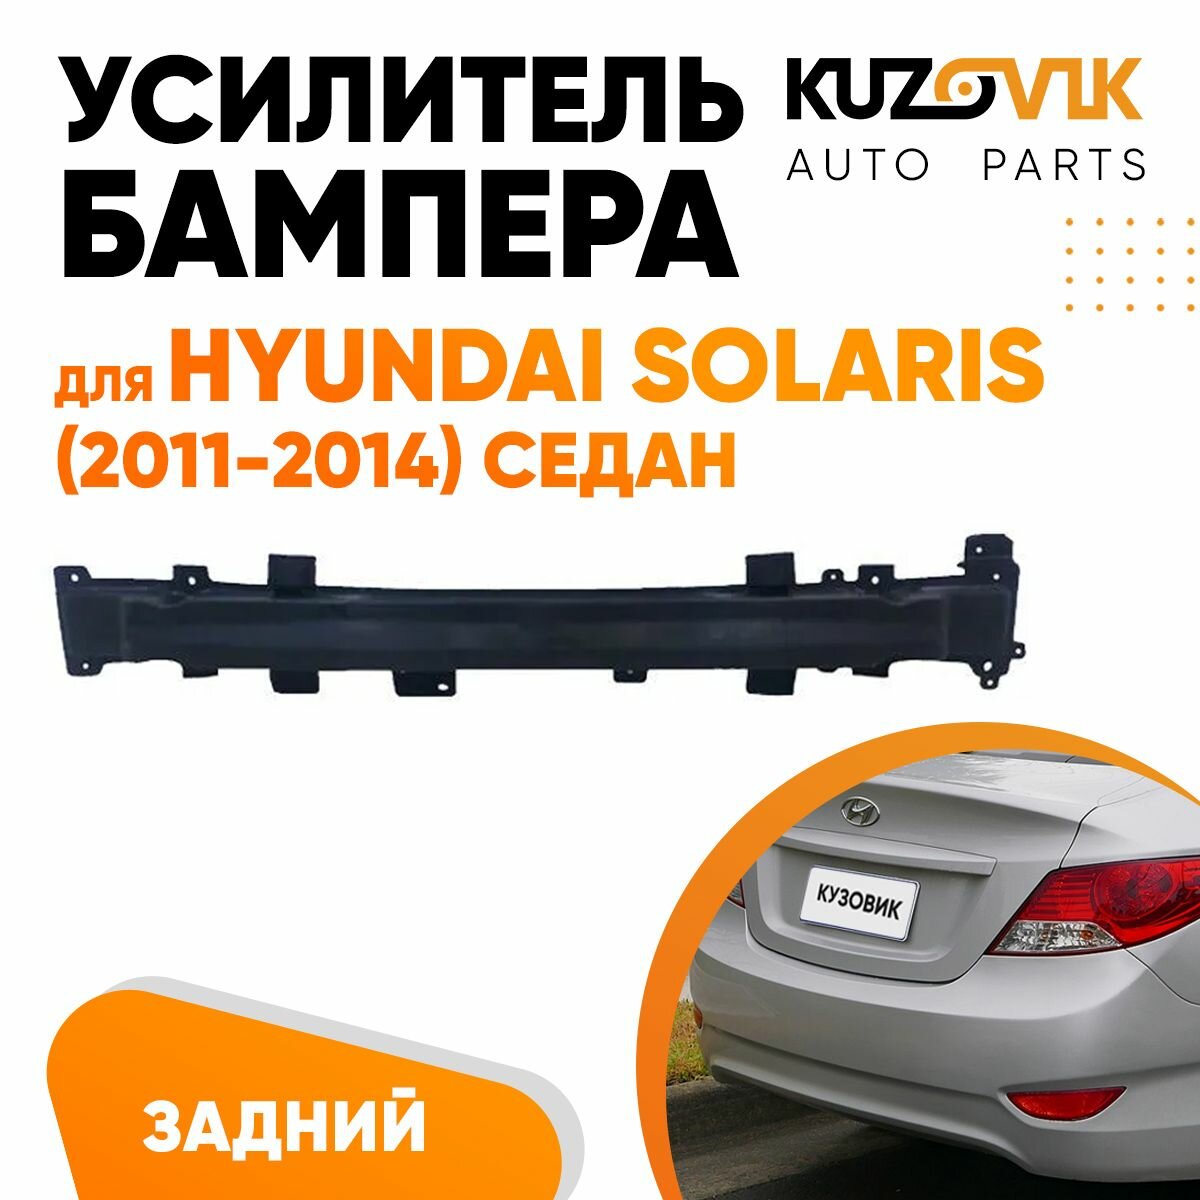 Абсорбер заднего бампера Hyundai Solaris (2011-2014) седан пластиковый